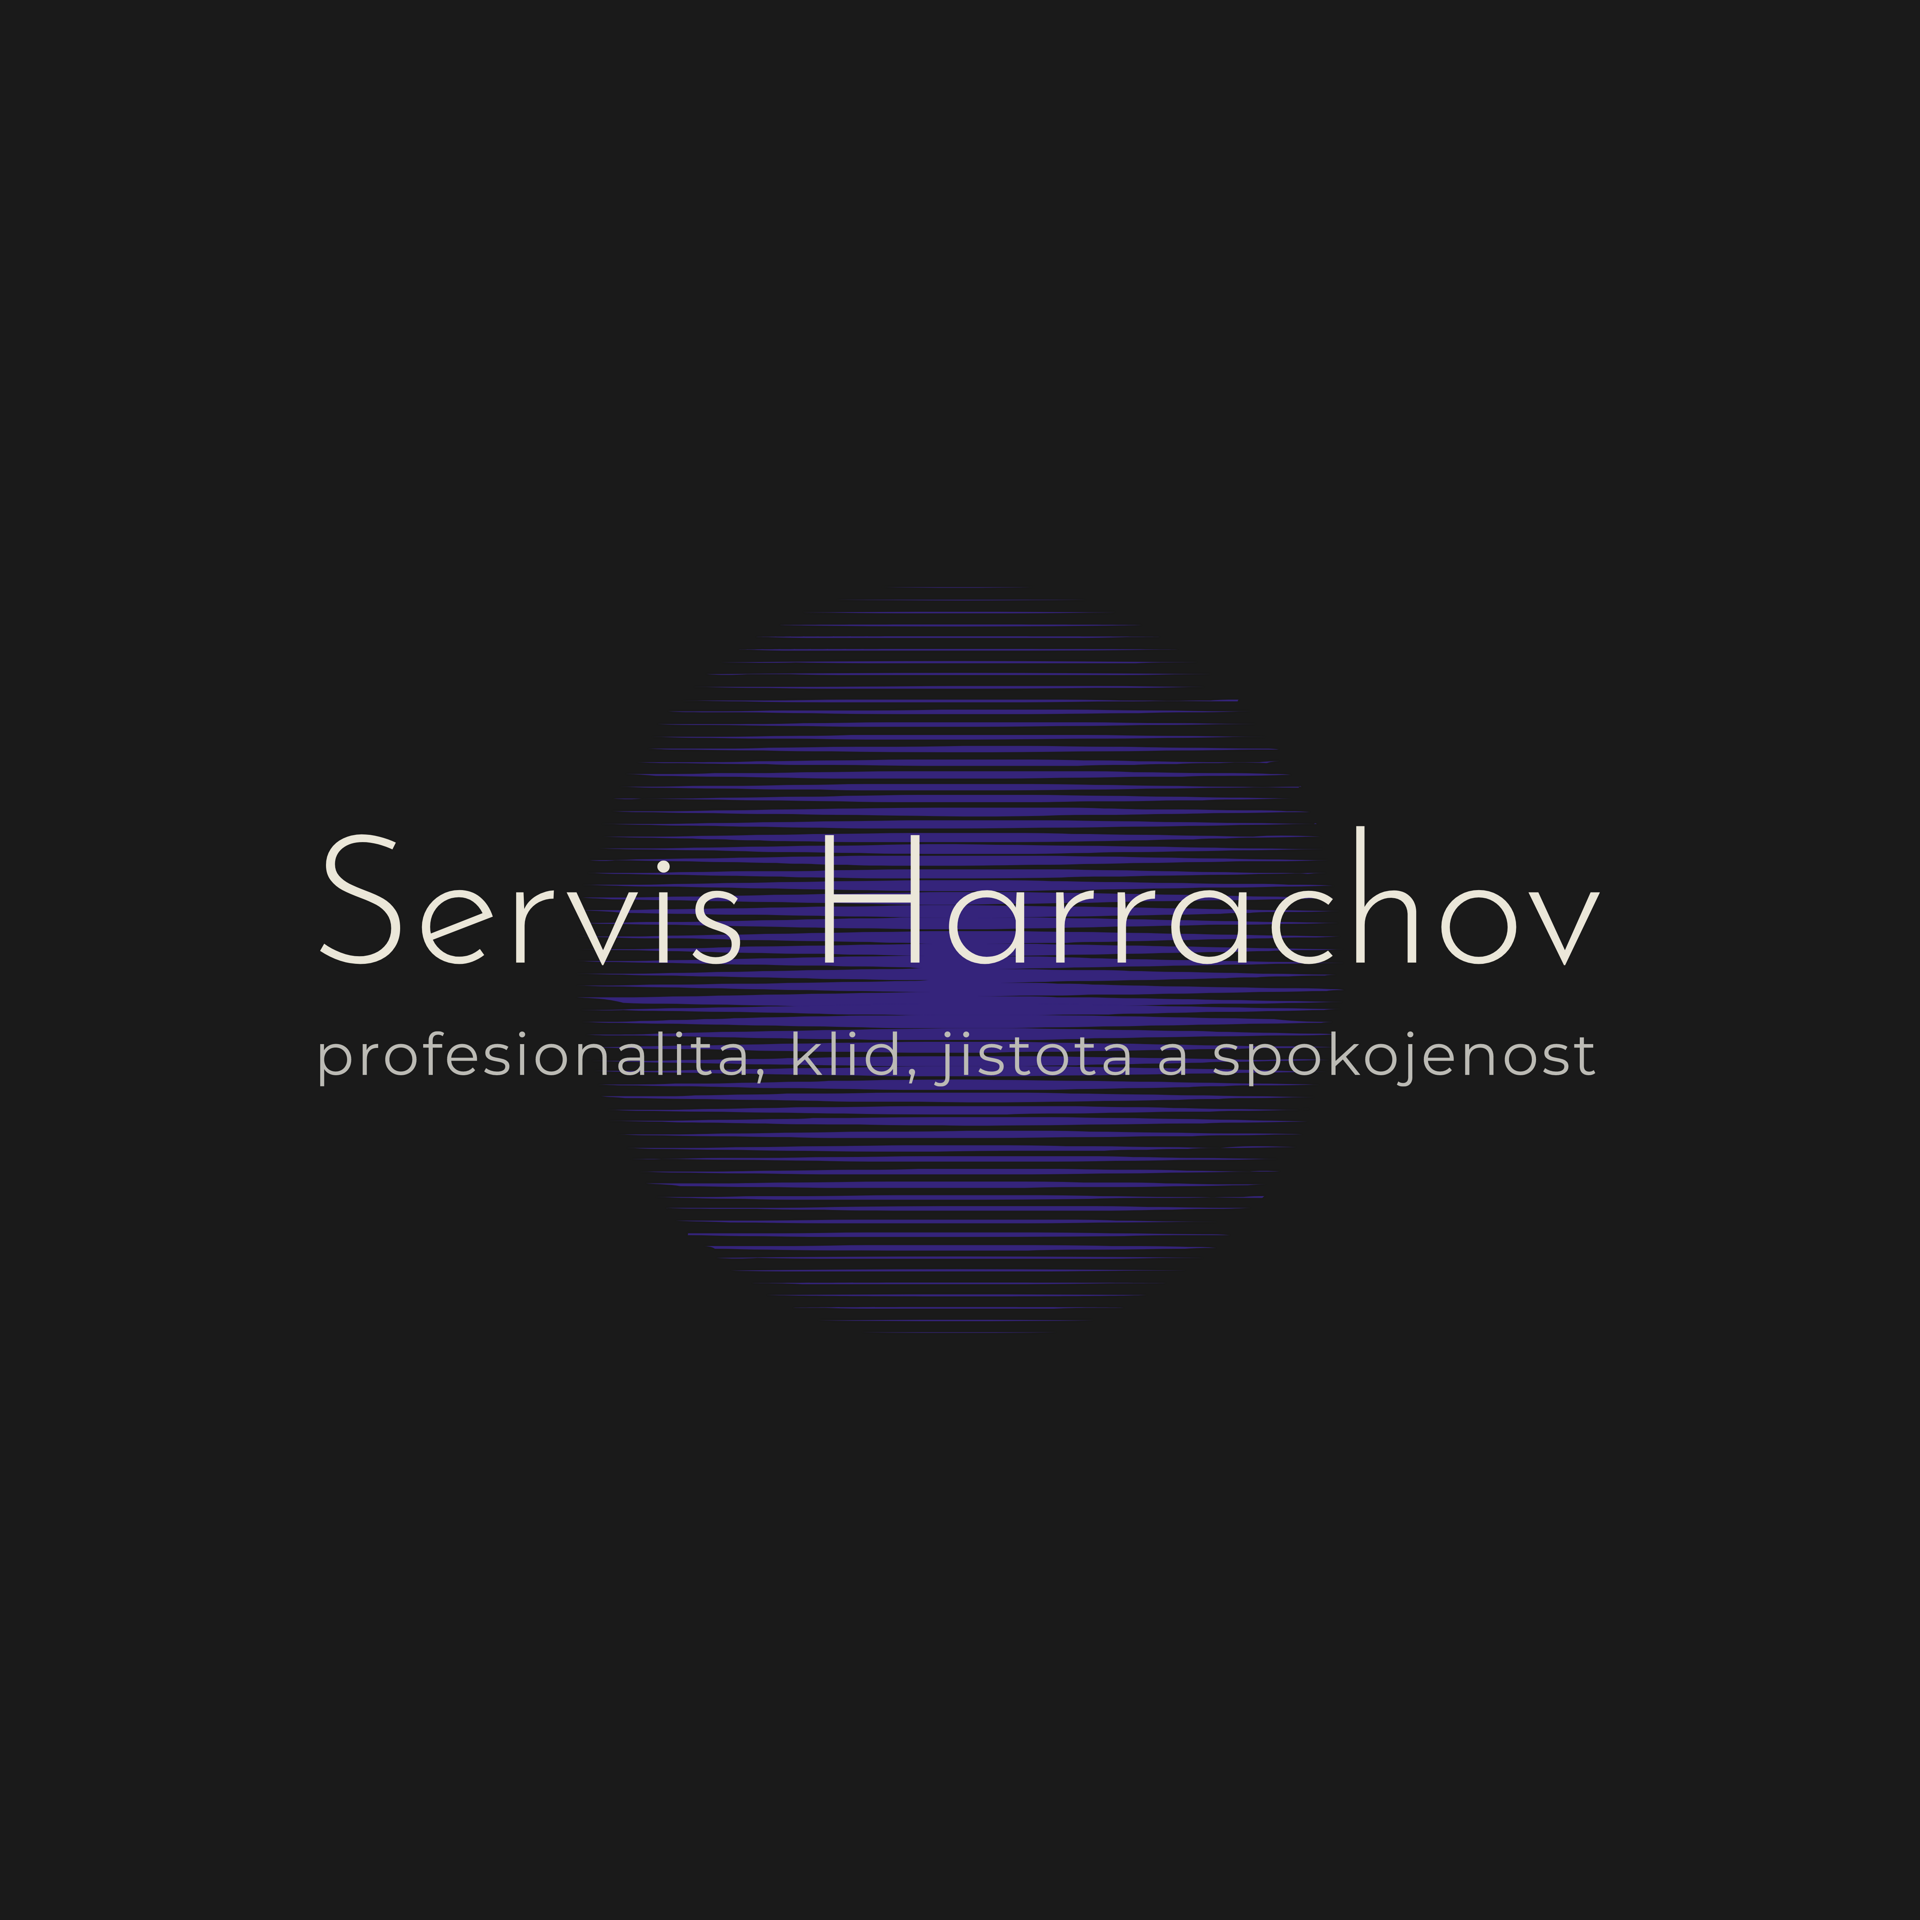 SERVIS HARRACHOV